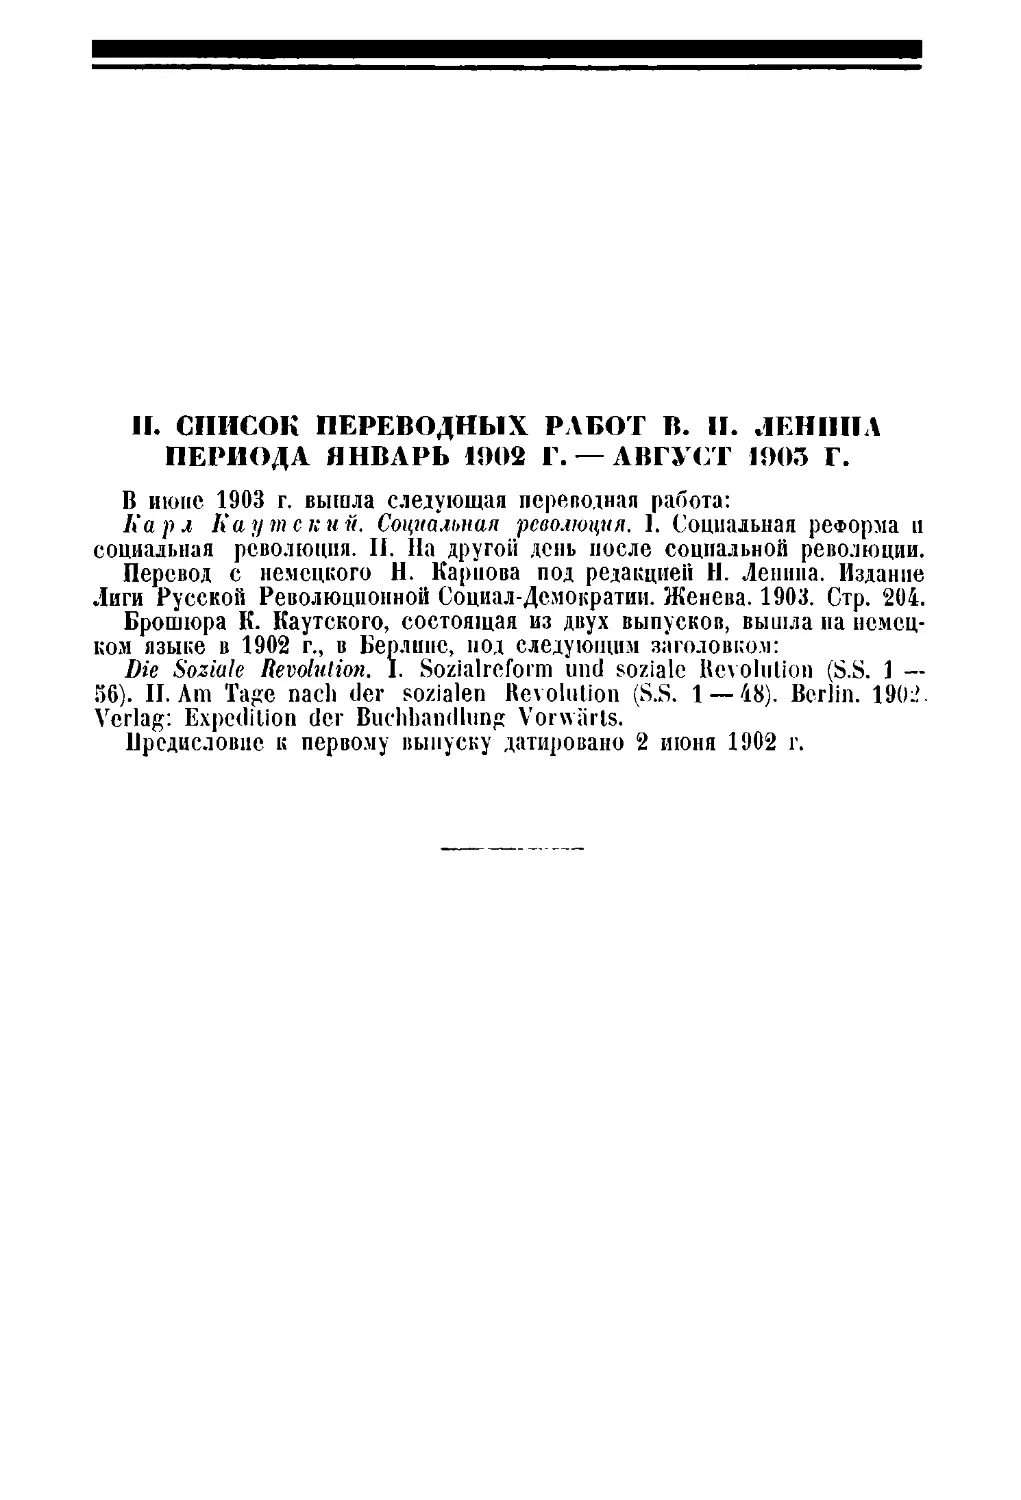 II. Список переводных работ В. И. Пенина периода январь 1902 г. — август 1903 г